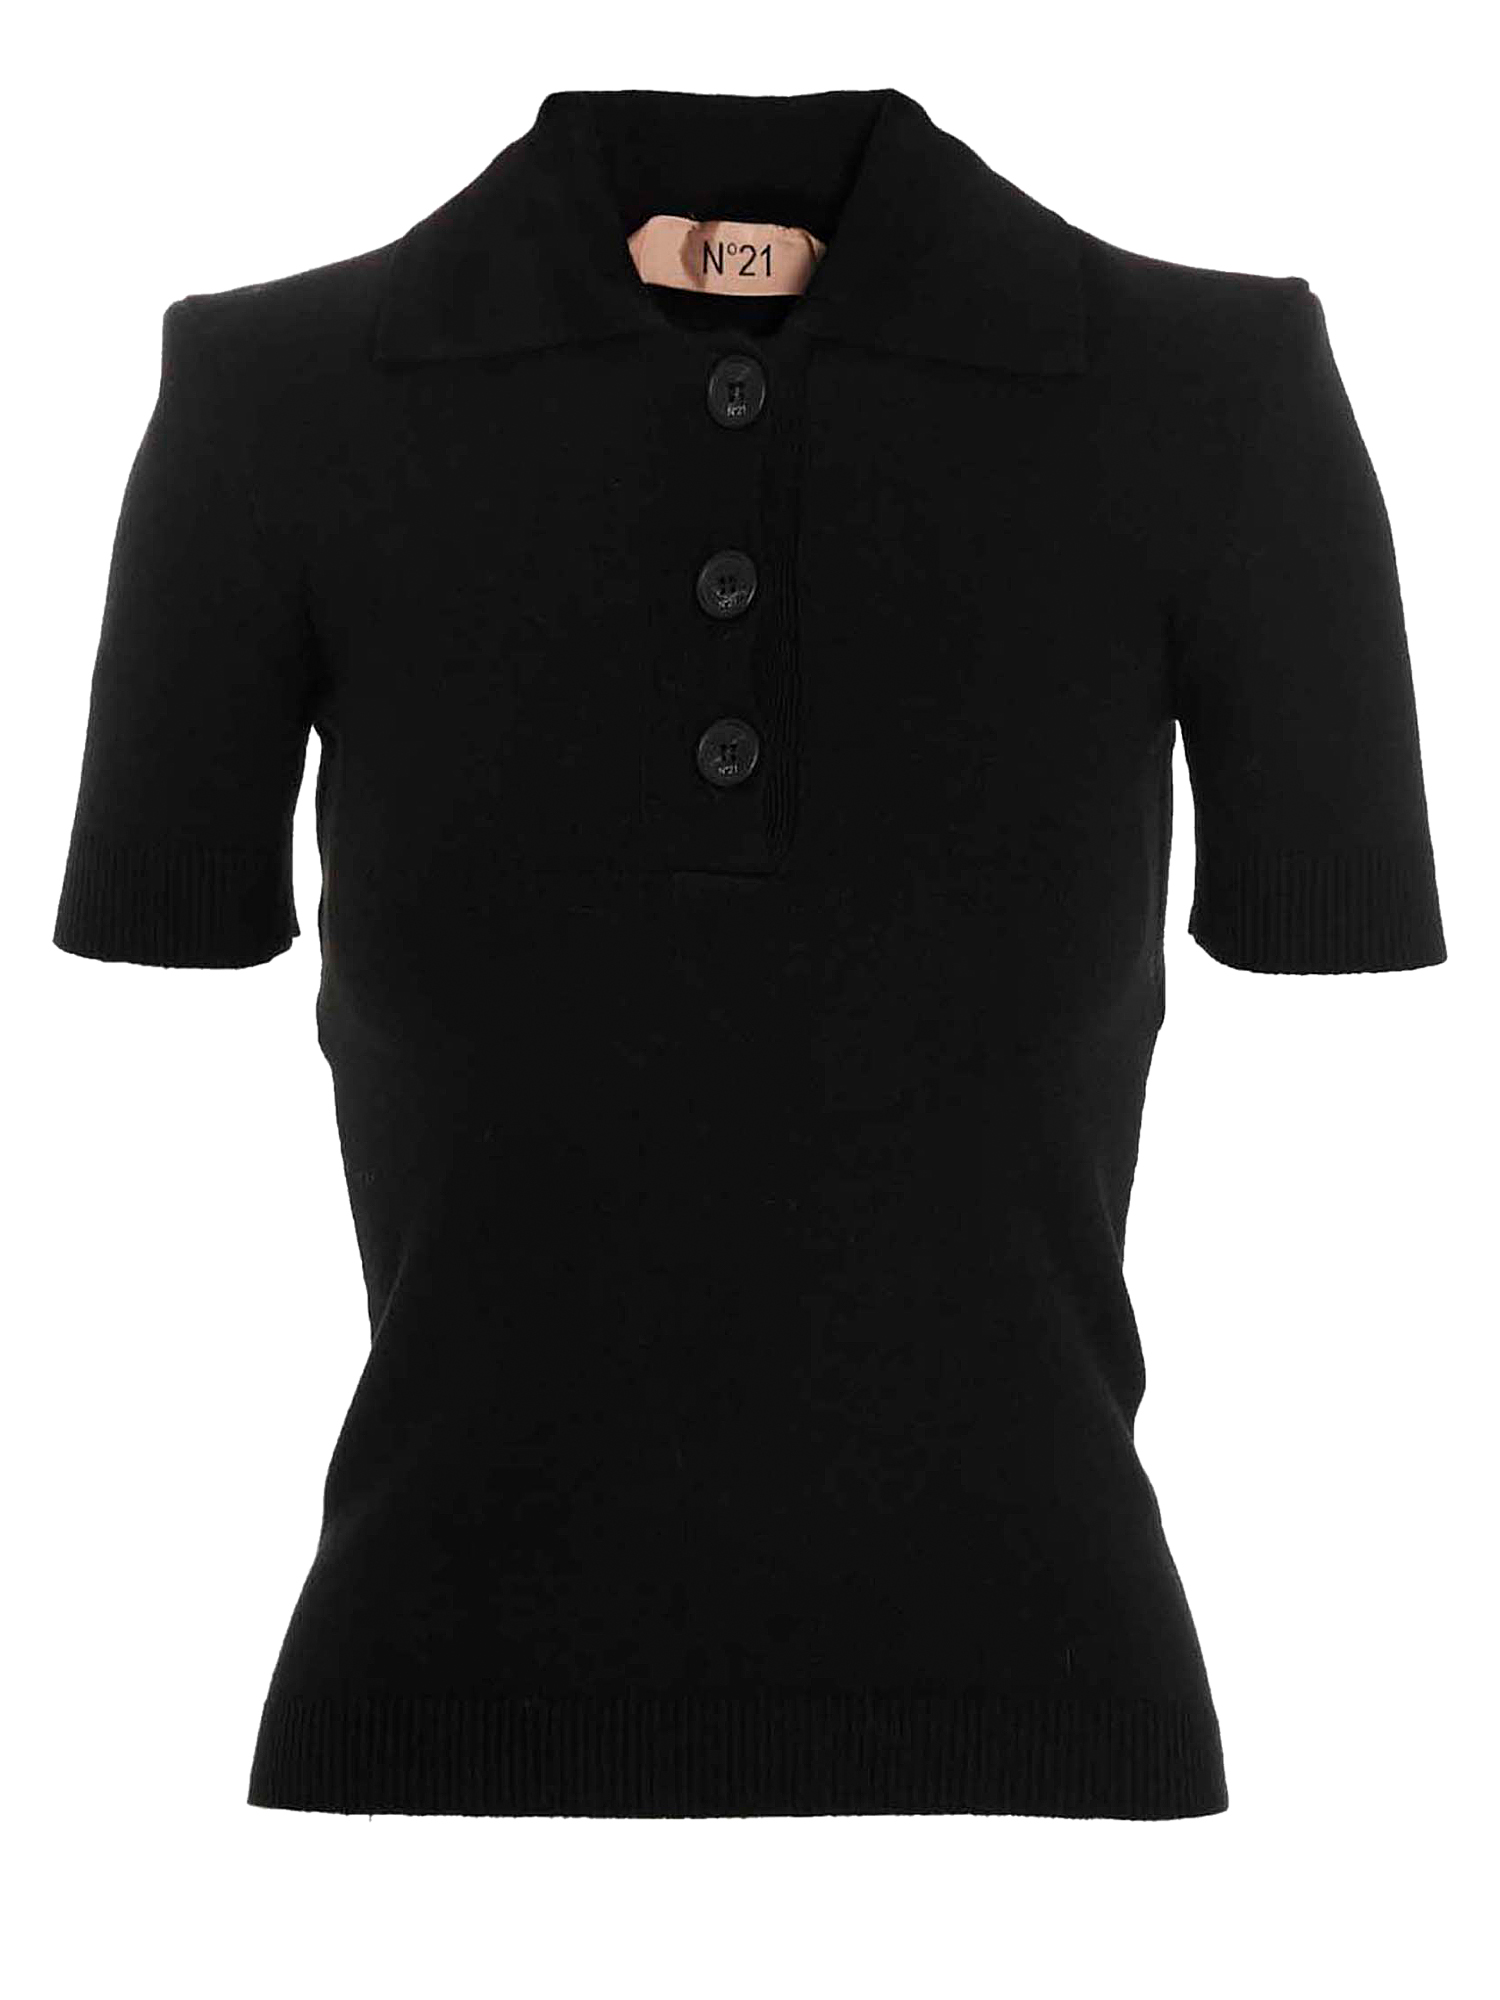 T-shirts Et Tops Pour Femme - N 21 - En Wool Black - Taille:  -